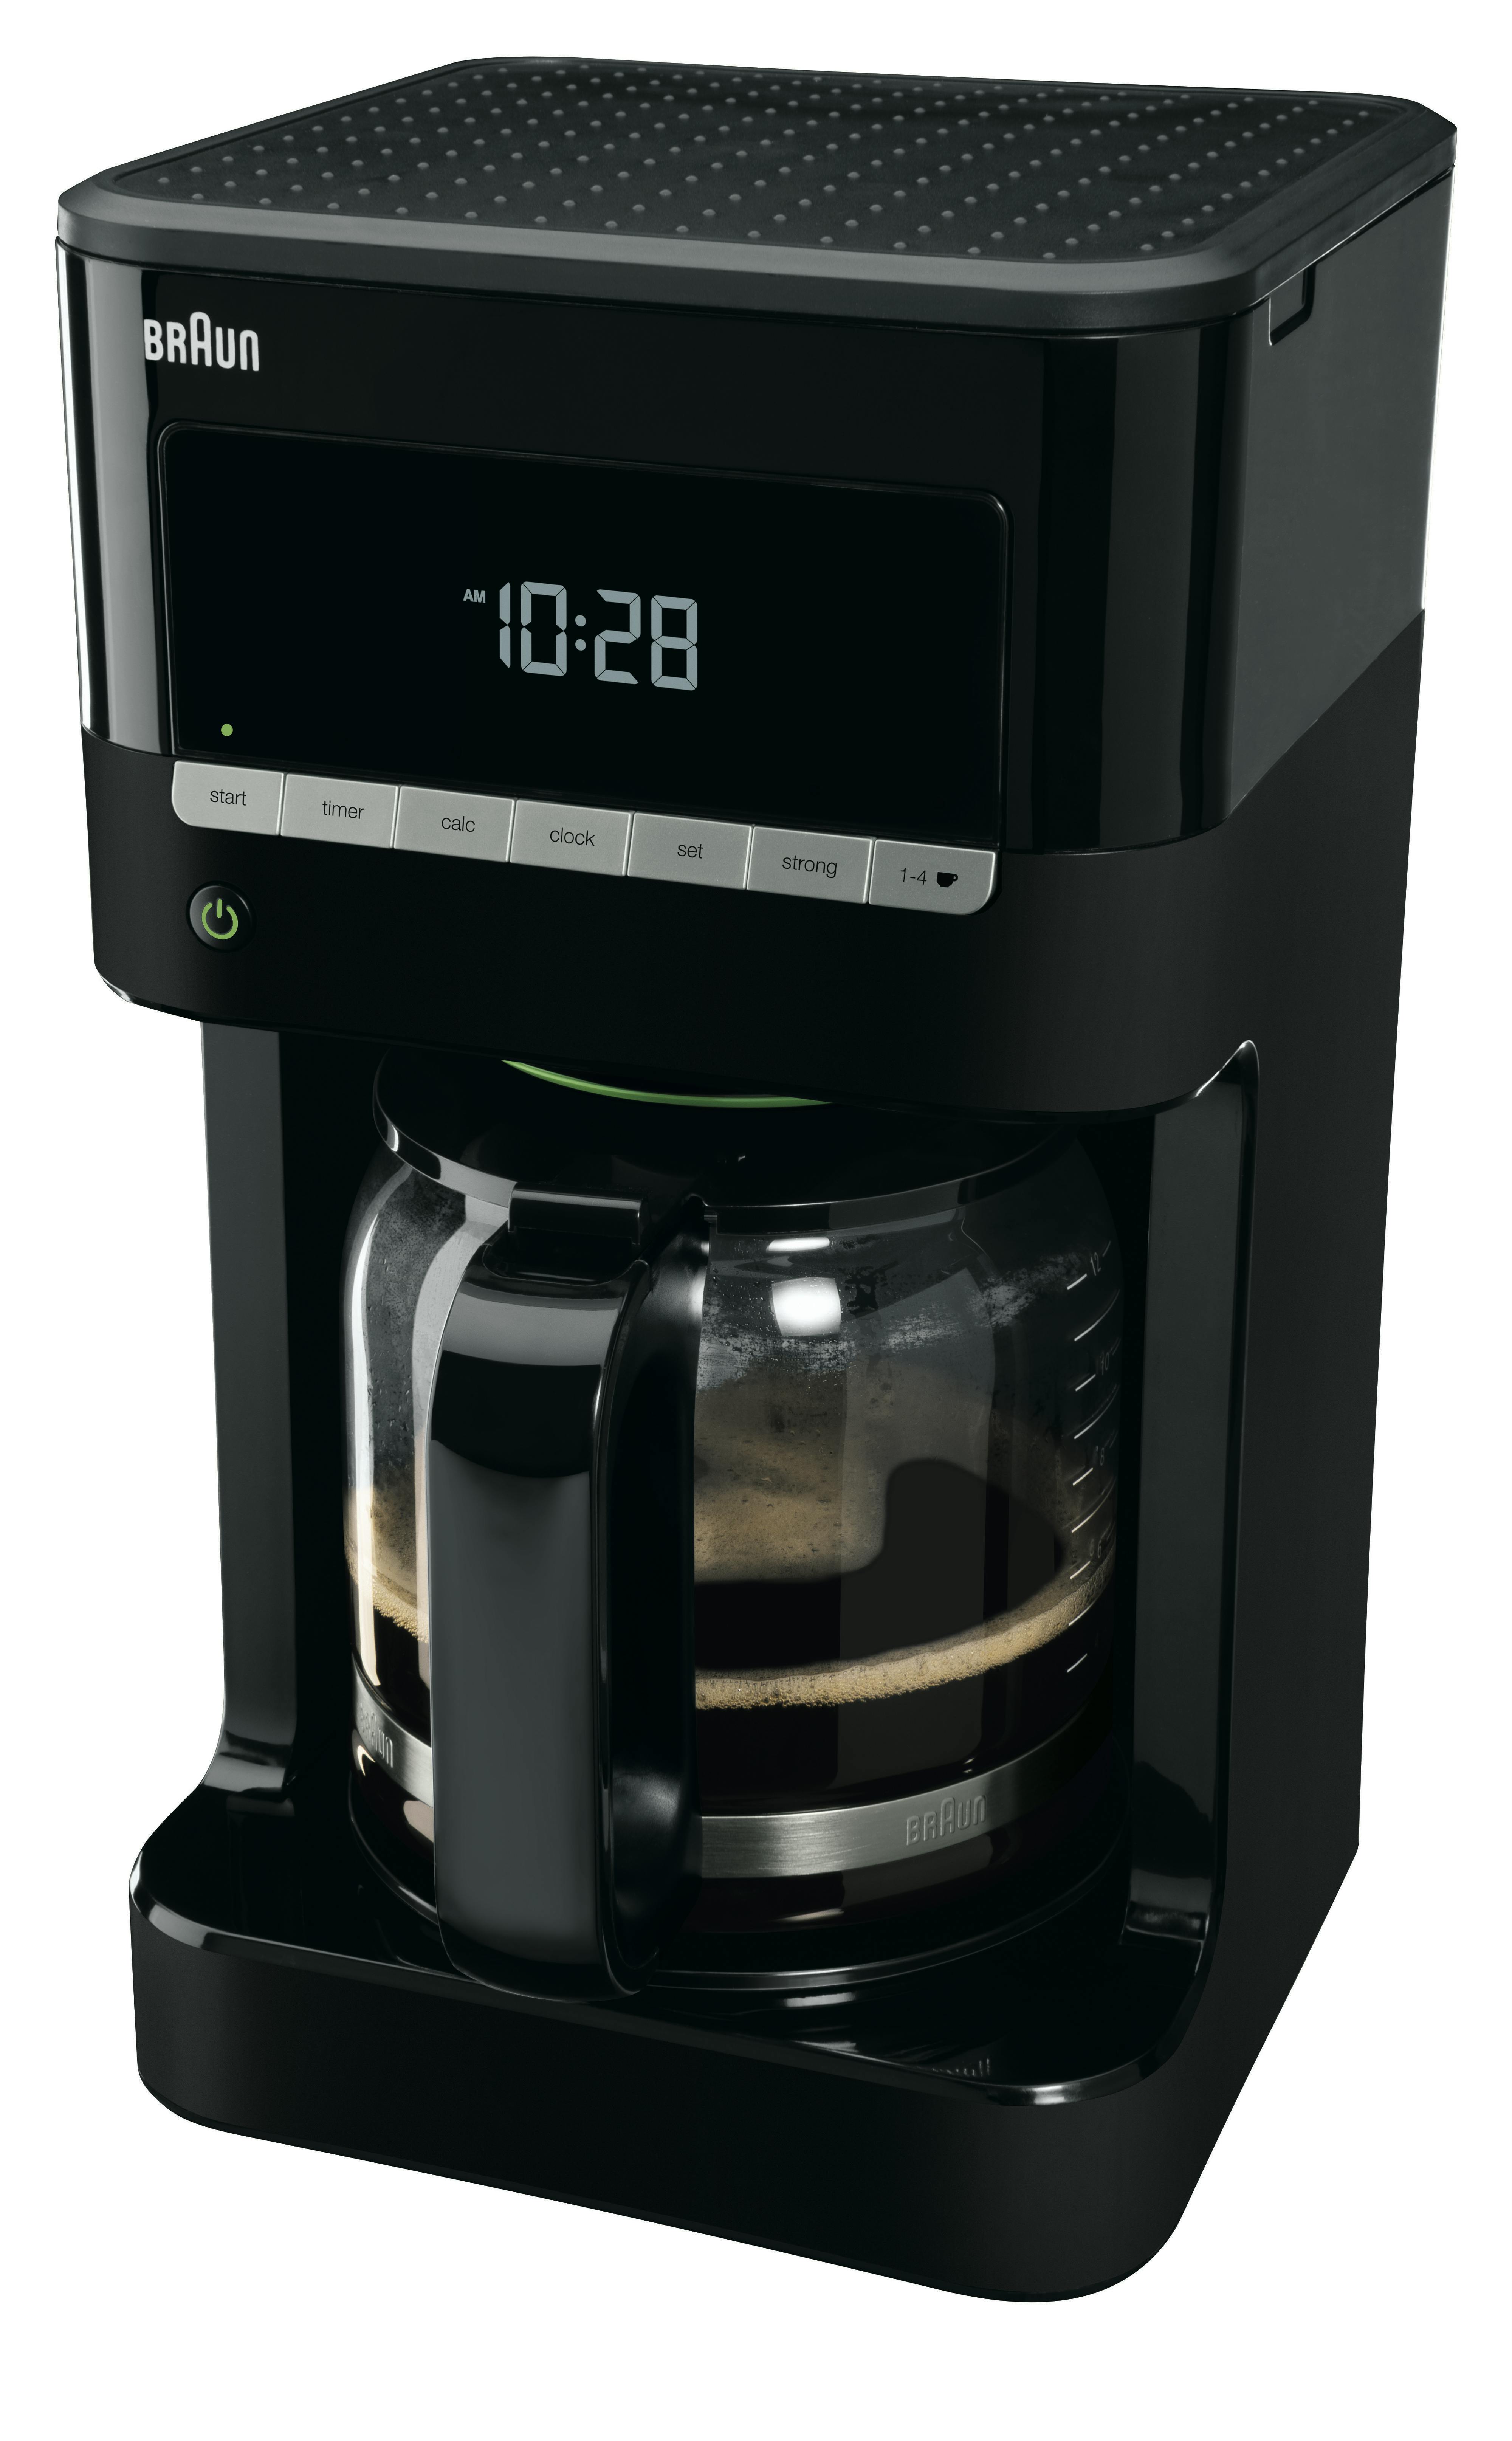 Braun Filterkaffeemaschine KF 7020, 12 Tassen-Aroma-Kanne | METRO Marktplatz